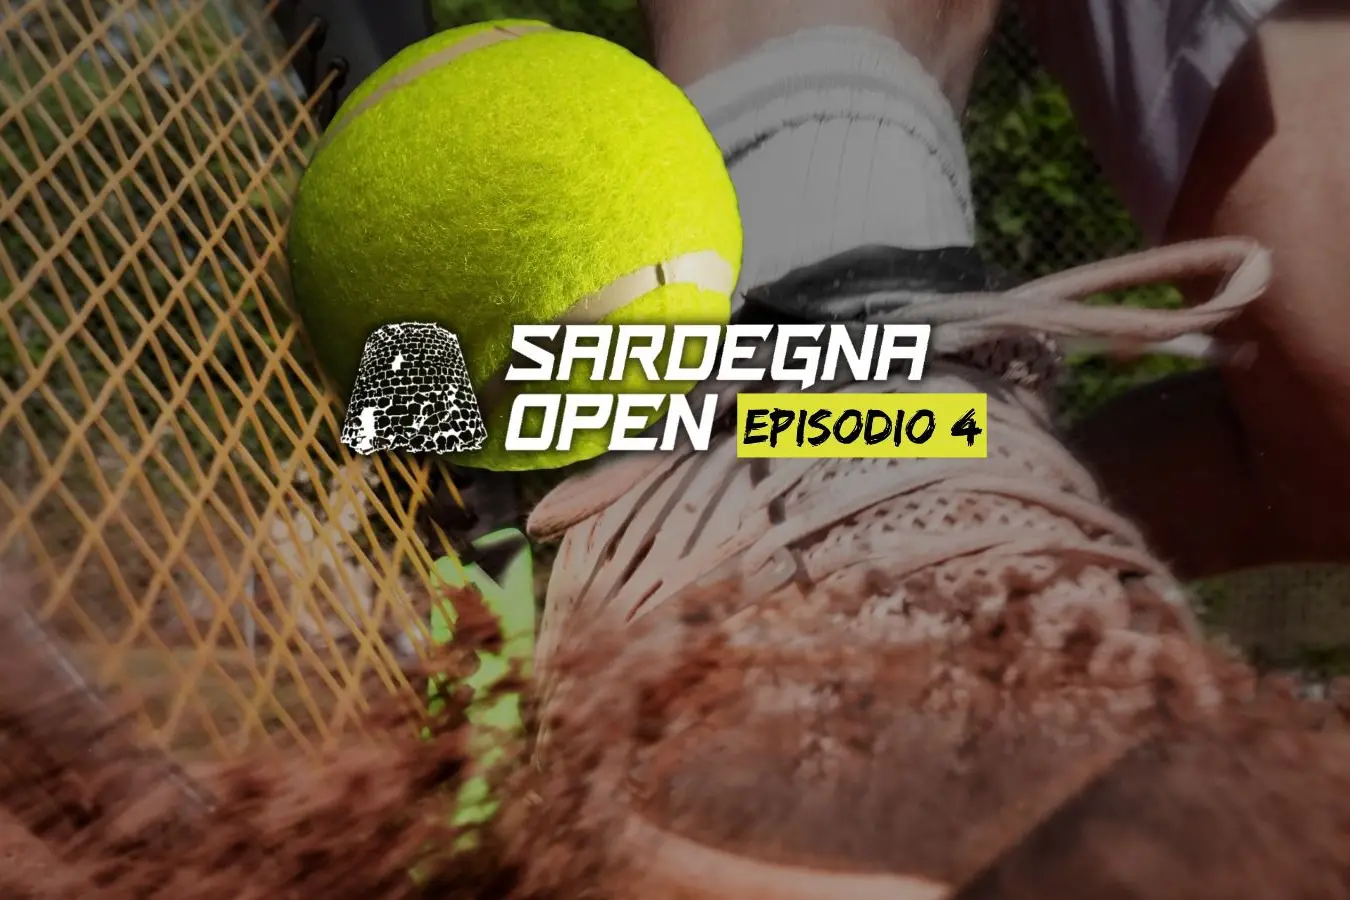 Sardegna Open, episodio 4